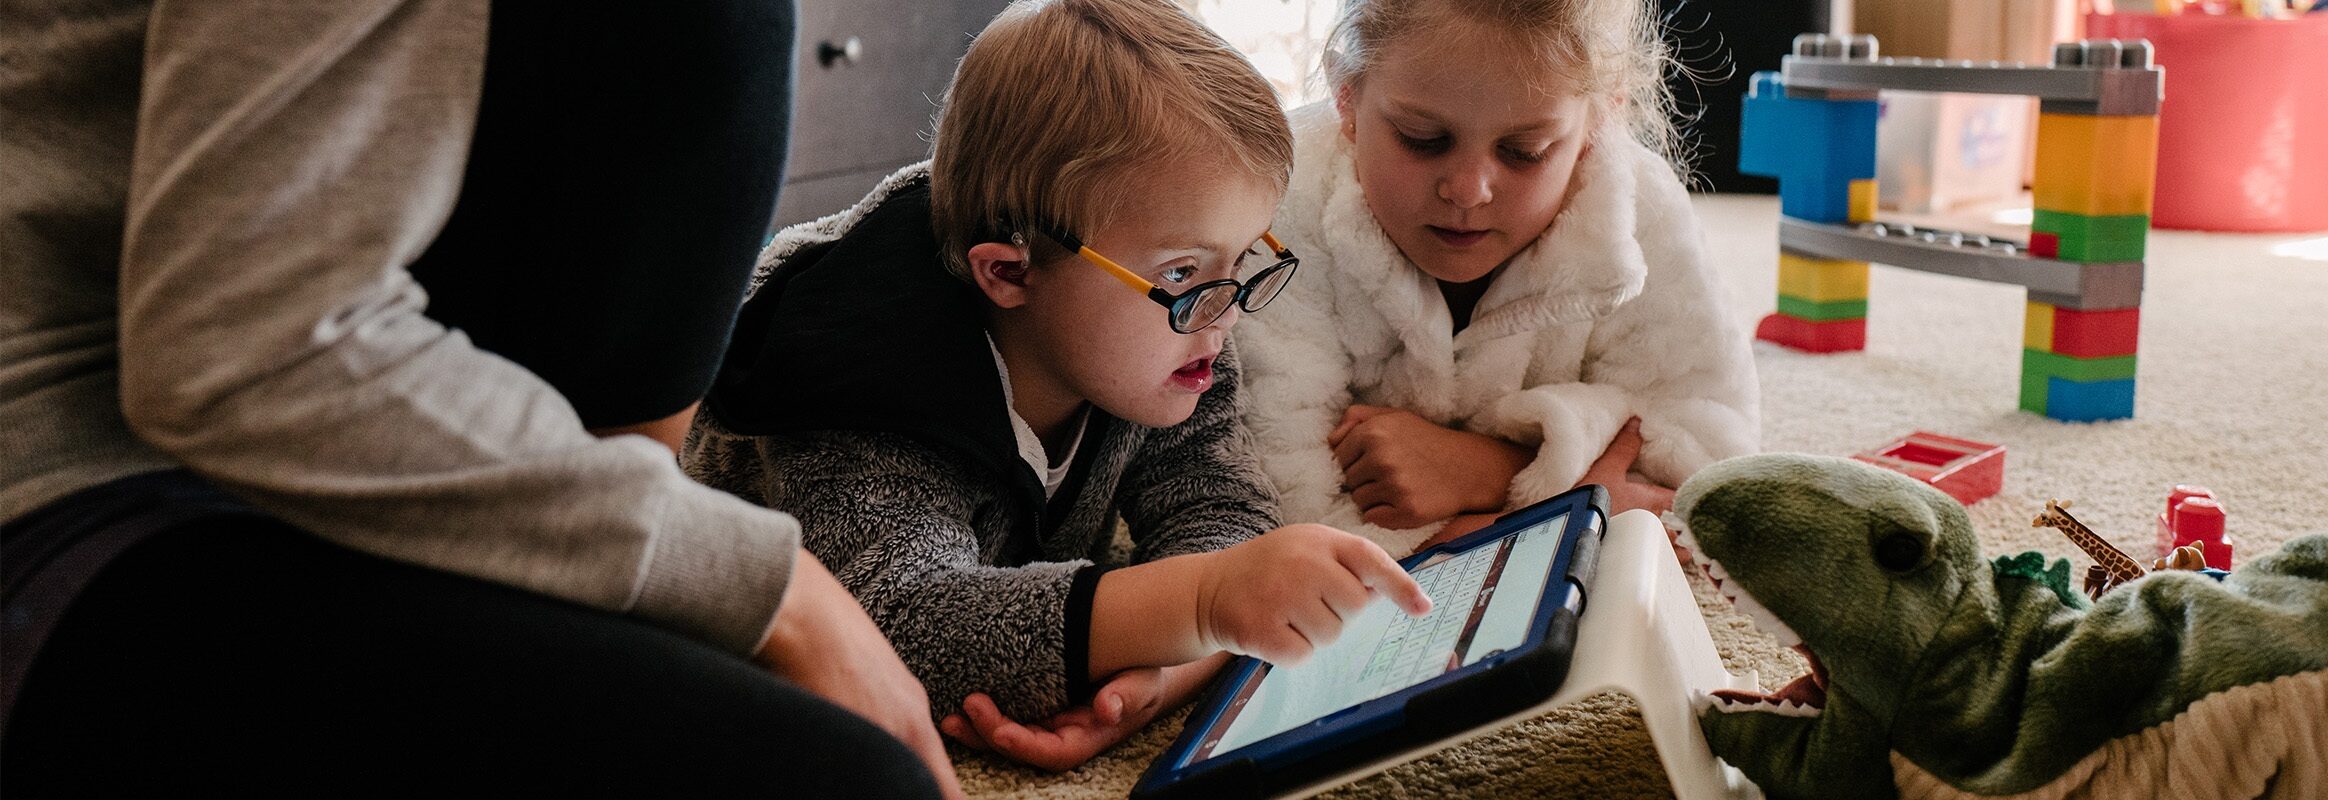 Jongetje tapt op pictogram in Proloquo2Go op iPad met zijn zus en moeder naast hem